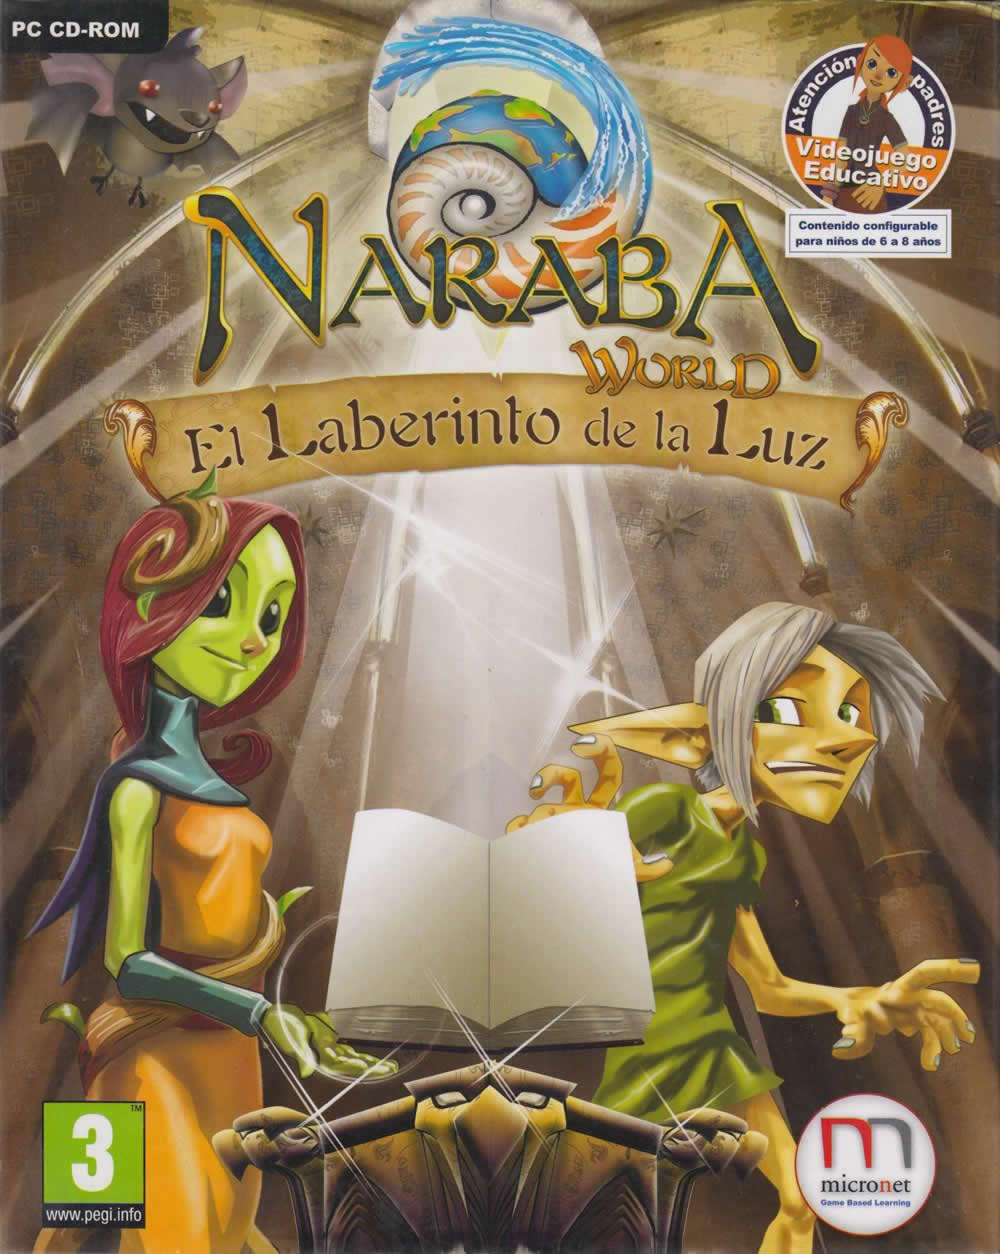 Naraba World - El Laberinto de la Luz - Portada.jpg